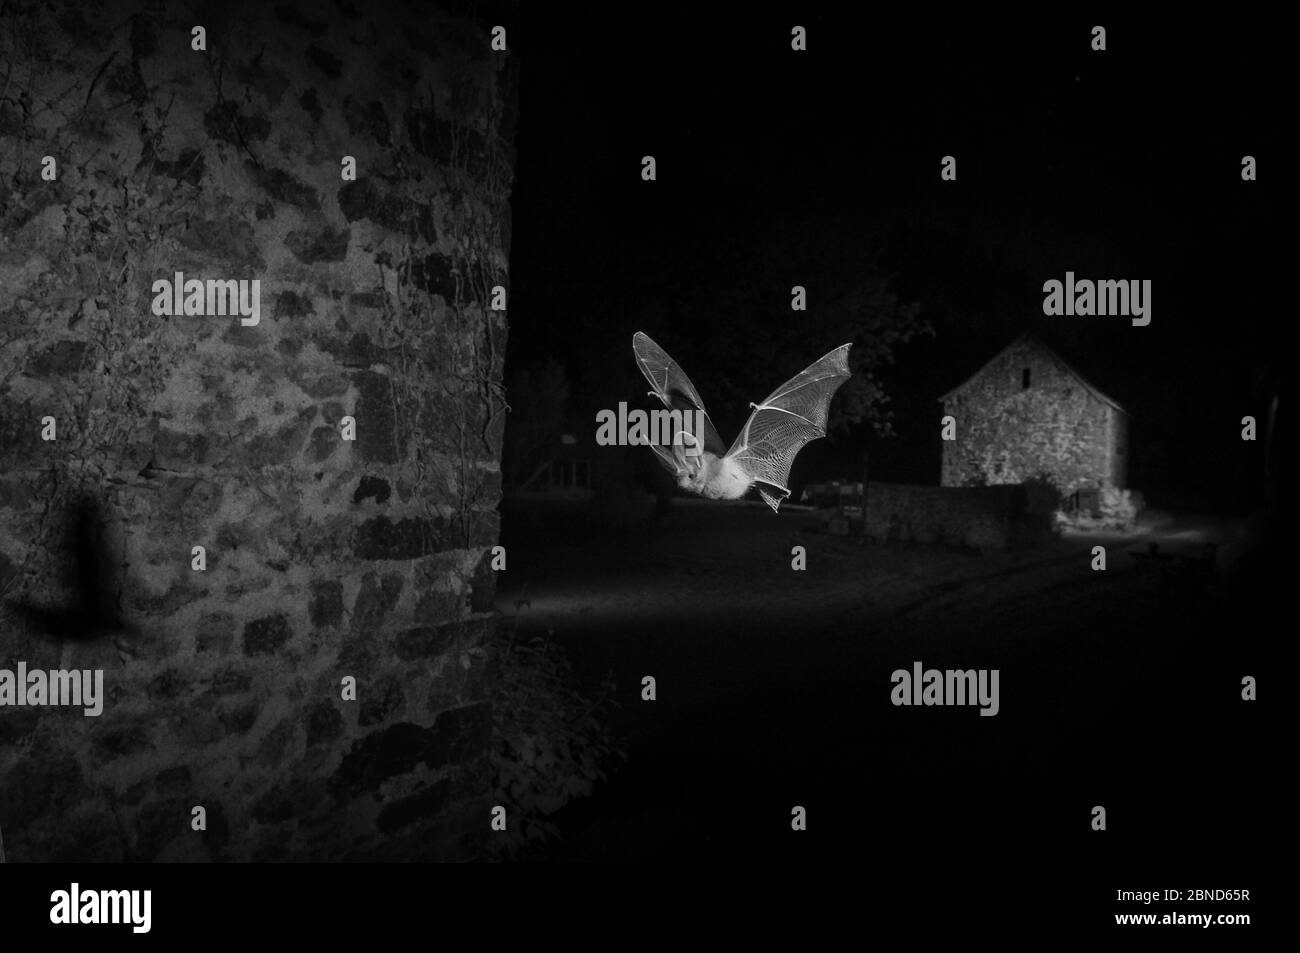 Chauve-souris grise à longues oreilles (Plecotus austriacus) en vol devant une grange, prise la nuit avec piège infrarouge à caméra à distance. Mayenne, France, juillet. Banque D'Images